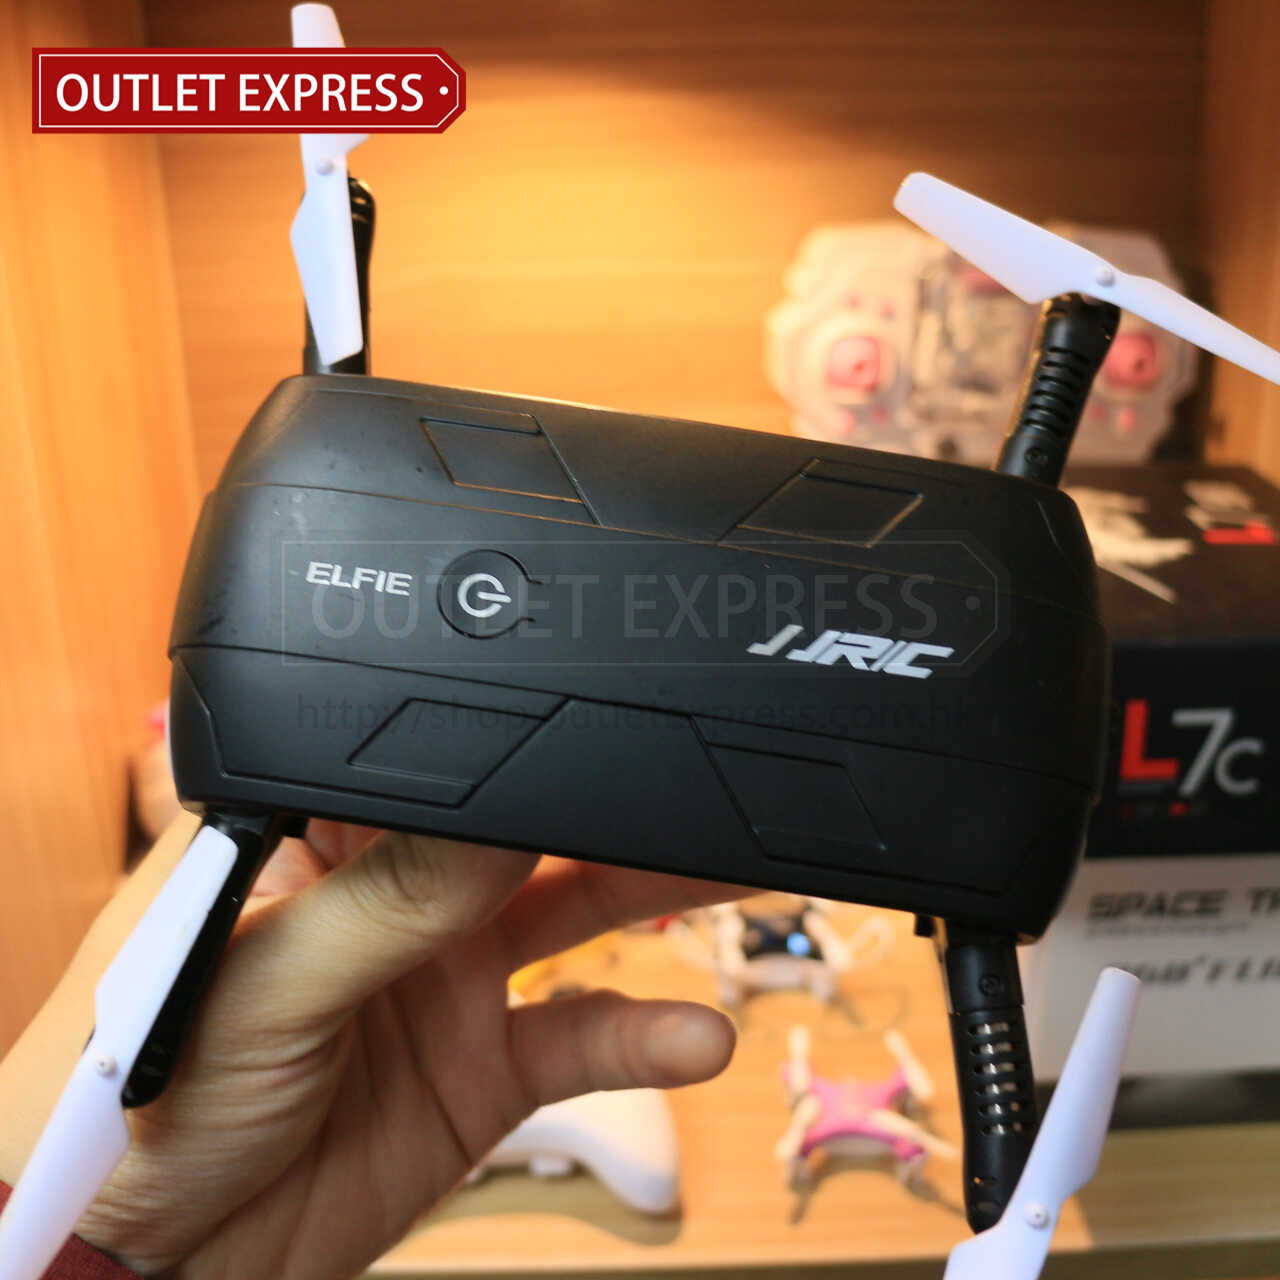 JJRC H37 可折疊迷你四軸無人機飛行器 - Outlet Express HK生活百貨城實拍相片